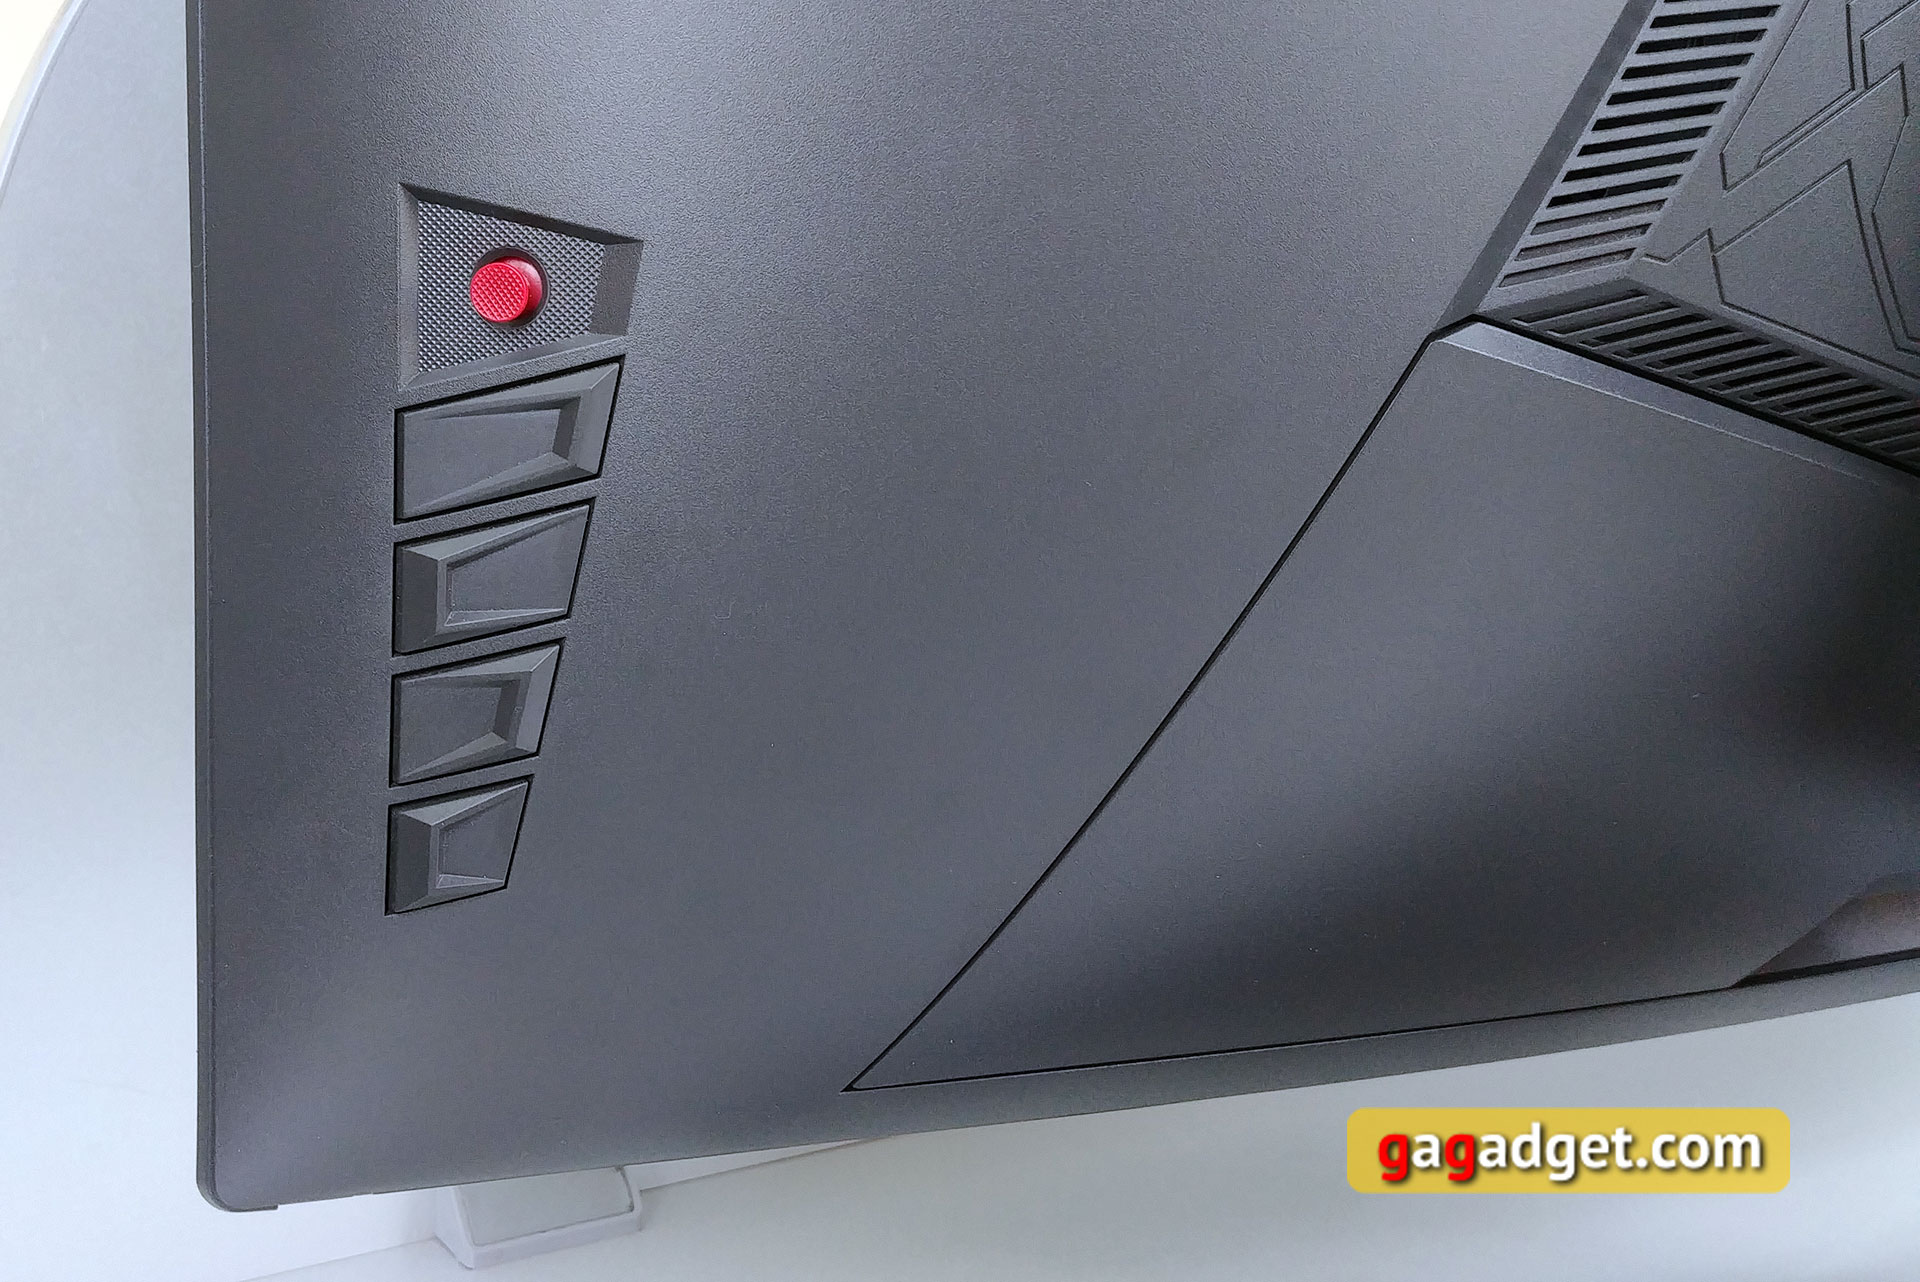 Обзор ASUS ROG Strix XG32VQ: 32-дюймовый изогнутый геймерский монитор с частотой 144 Гц-20